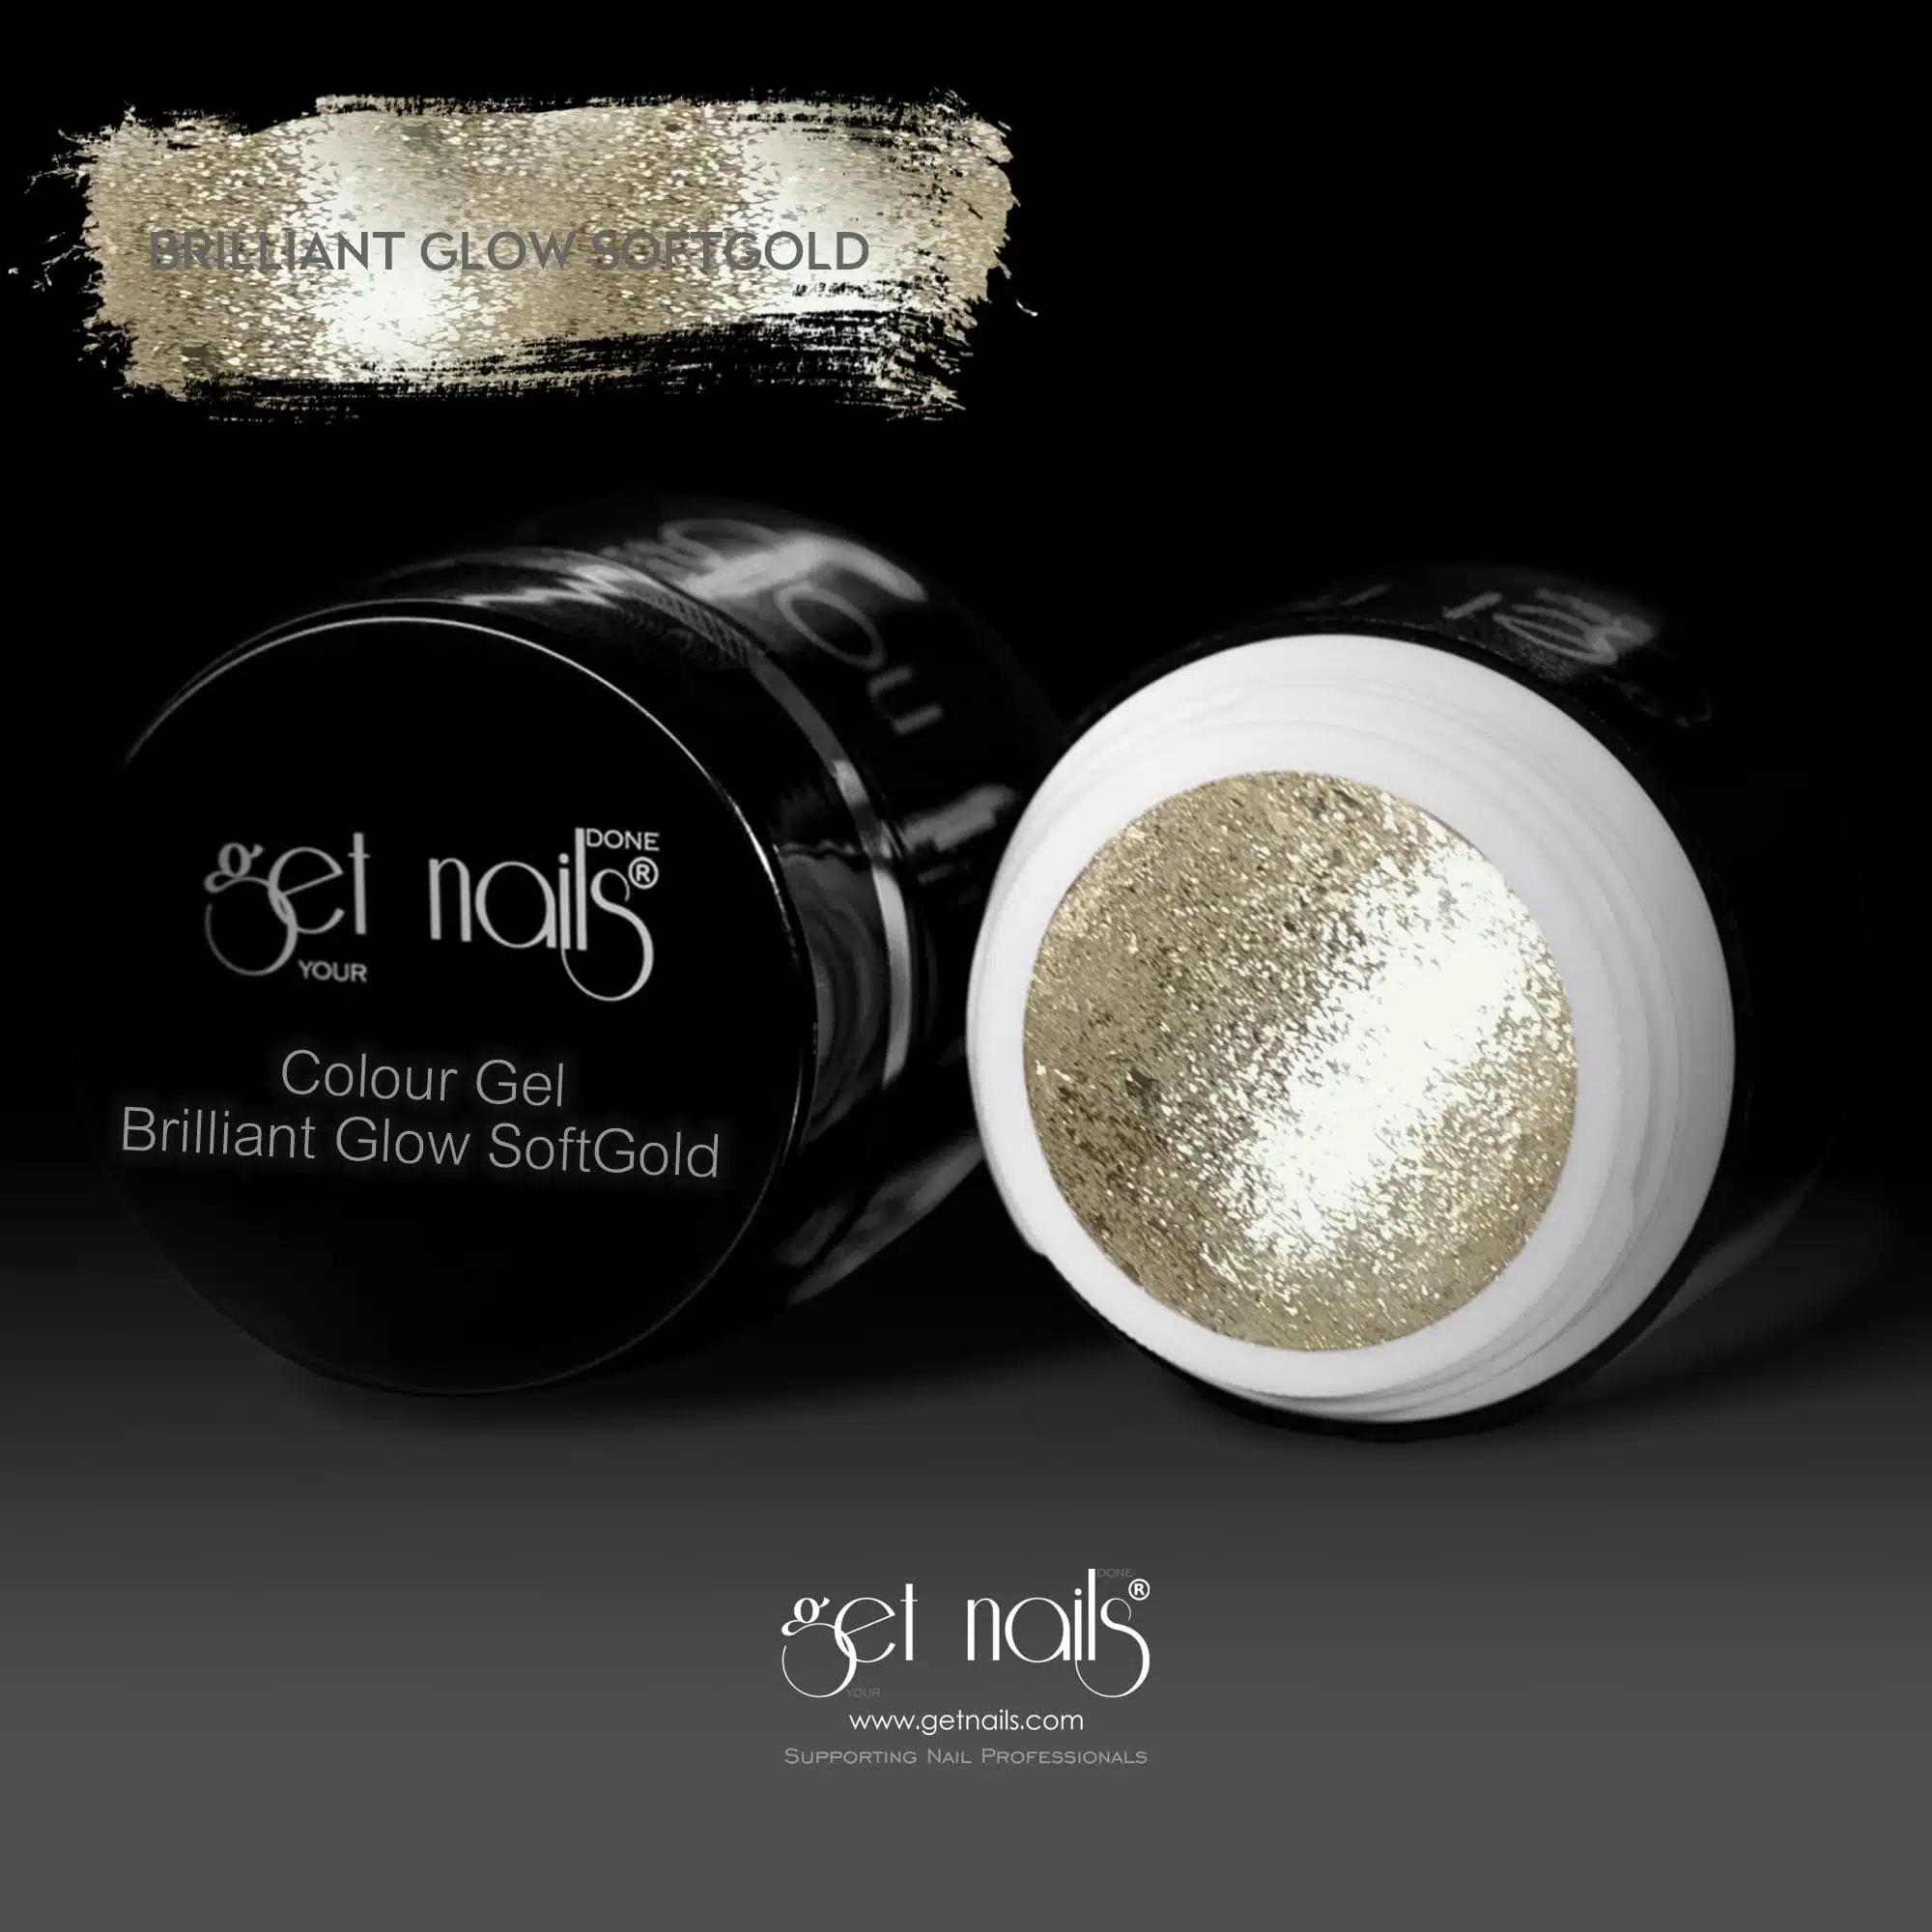 Get Nails Austria - Színes gél Brilliant Glow Soft Gold 5g